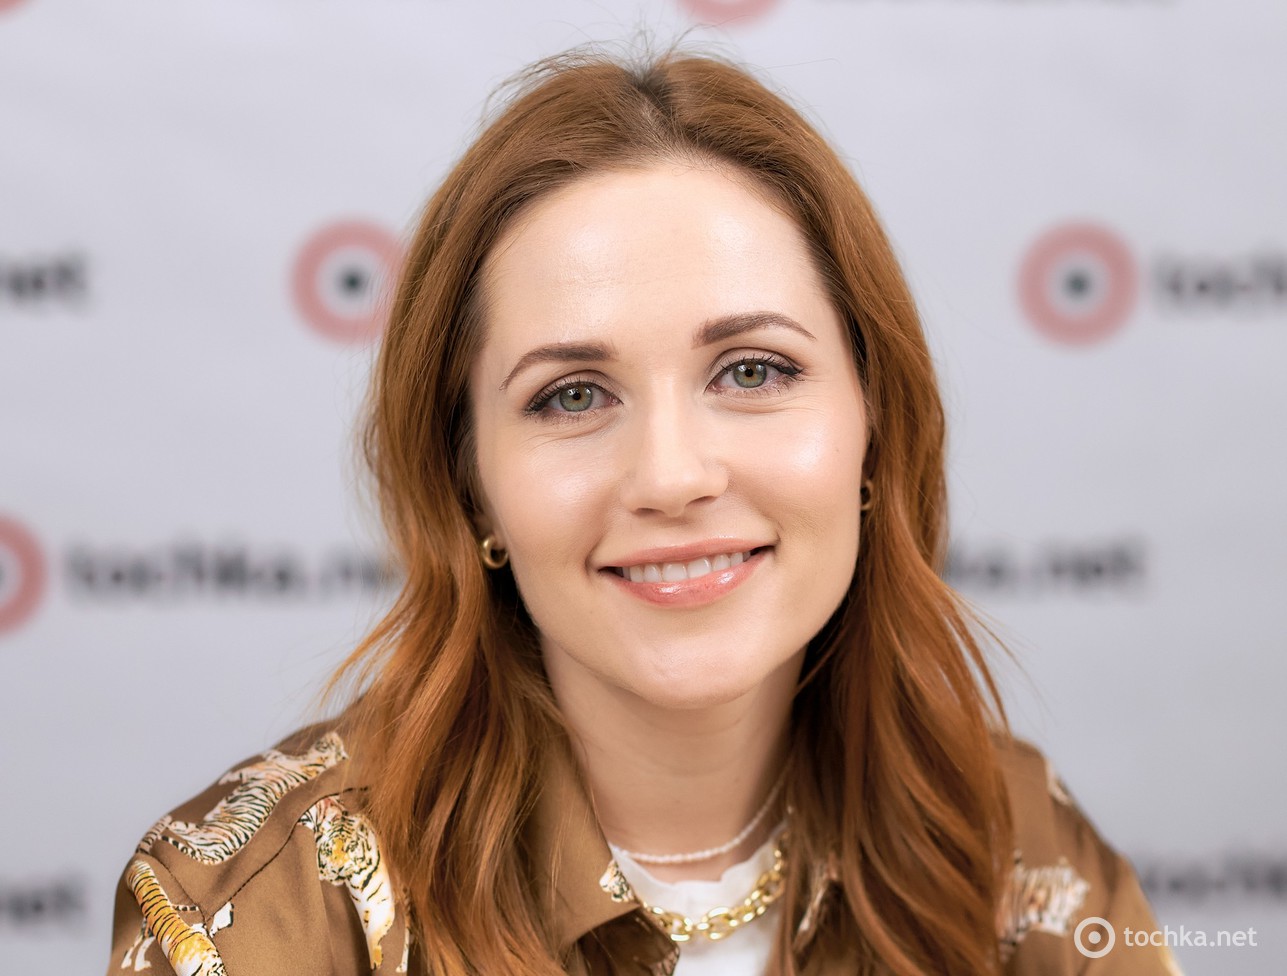 Наталия Денисенко